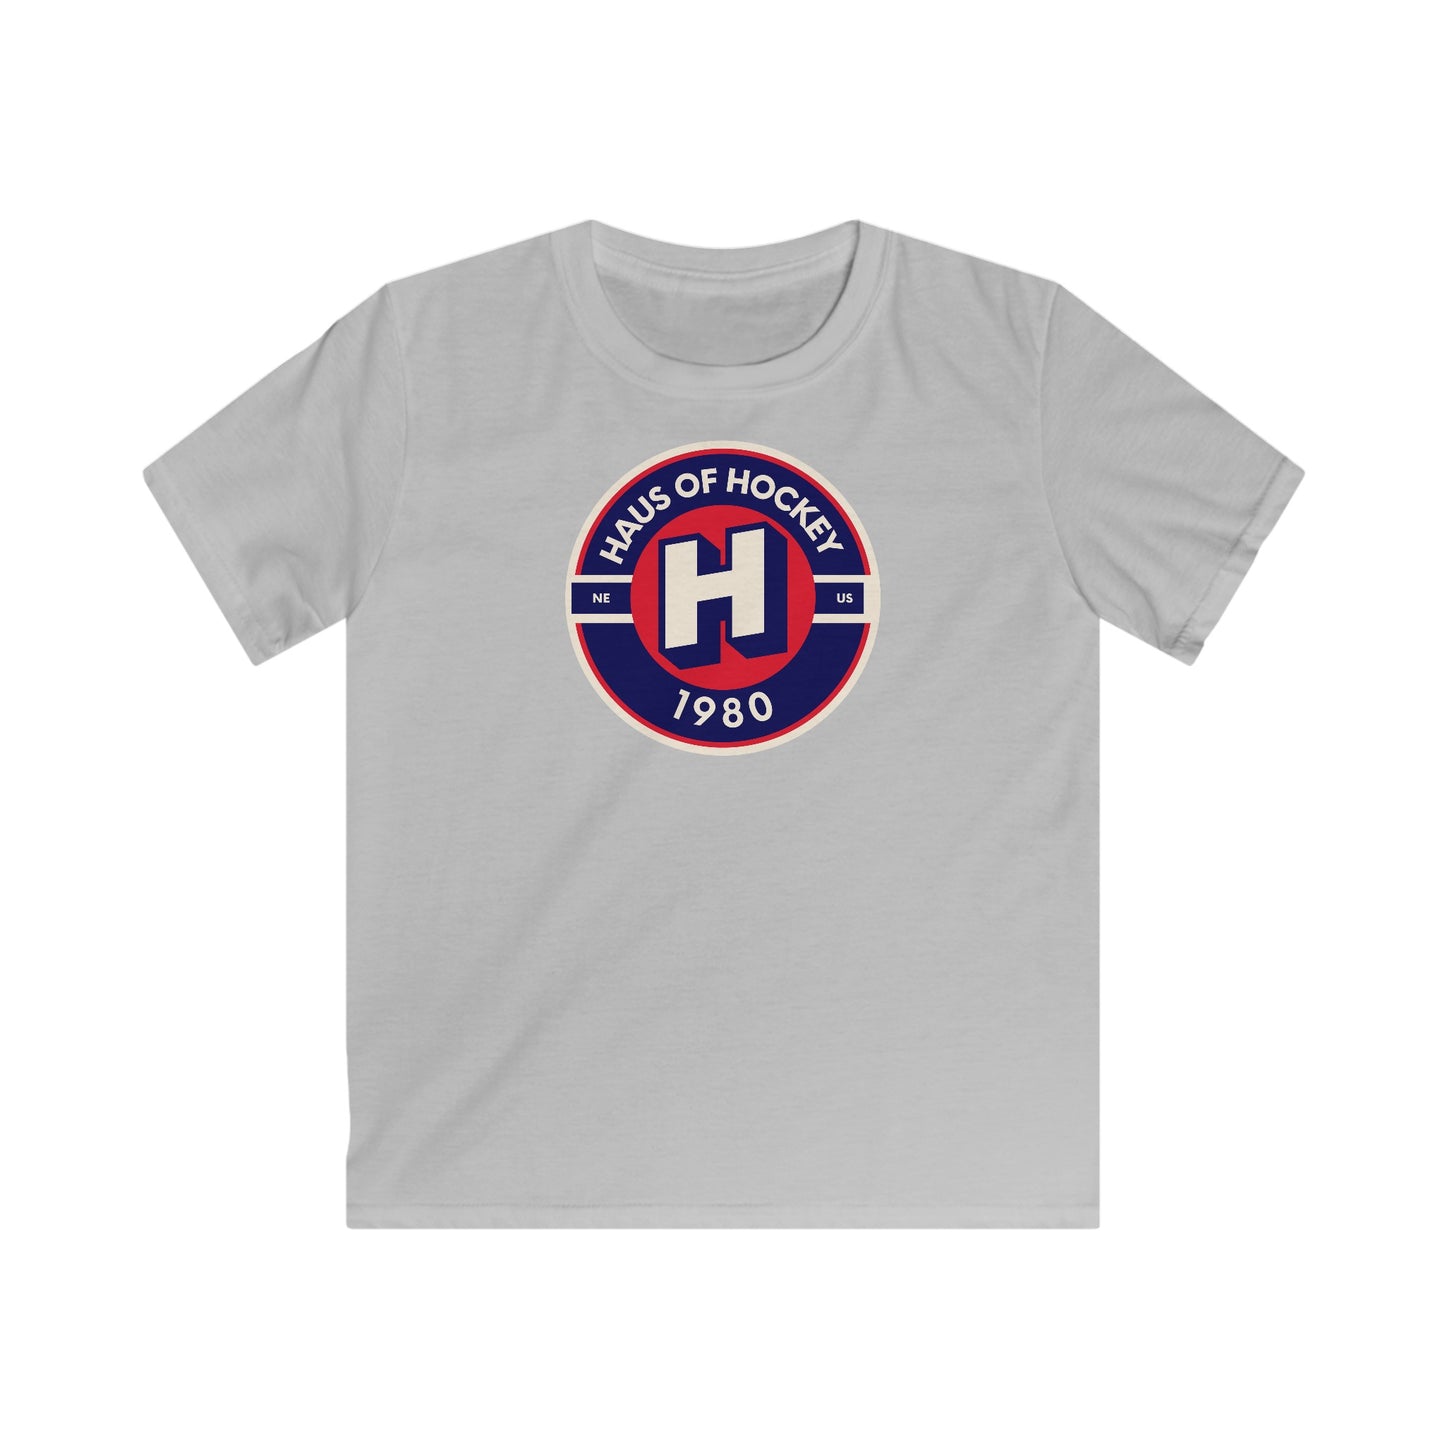 Haus Of Hockey Original Youth T-shirt